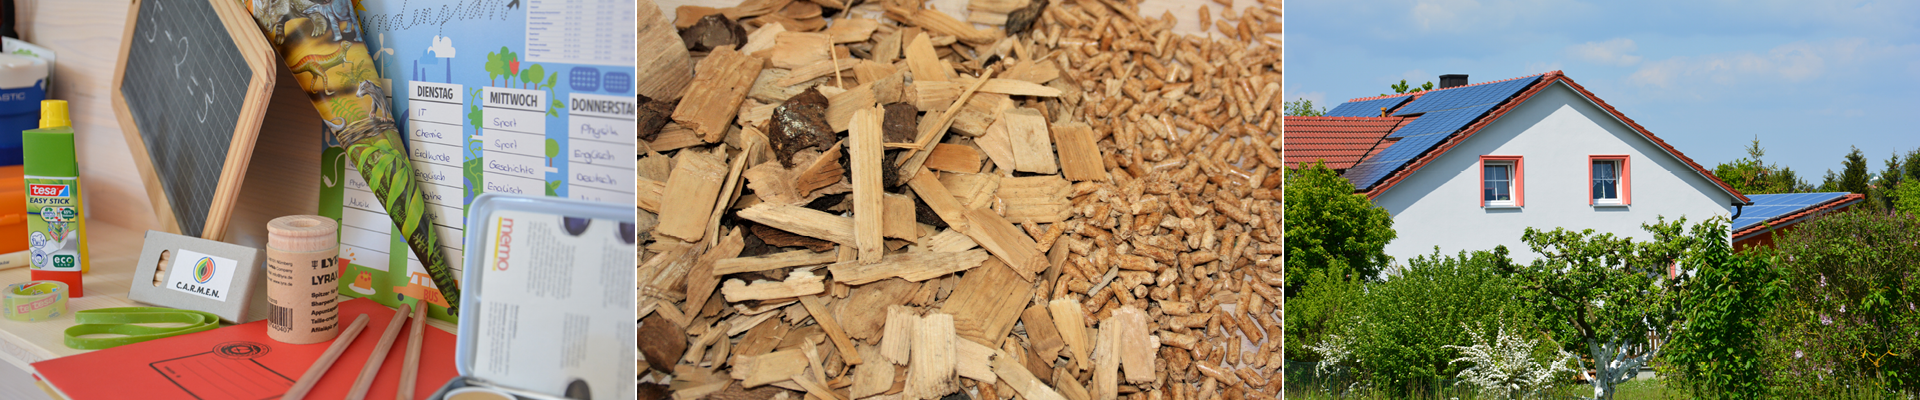 C.A.R.M.E.N.-WebSeminar “Heizungsmodernisierung mit Holzpellets und Scheitholz”